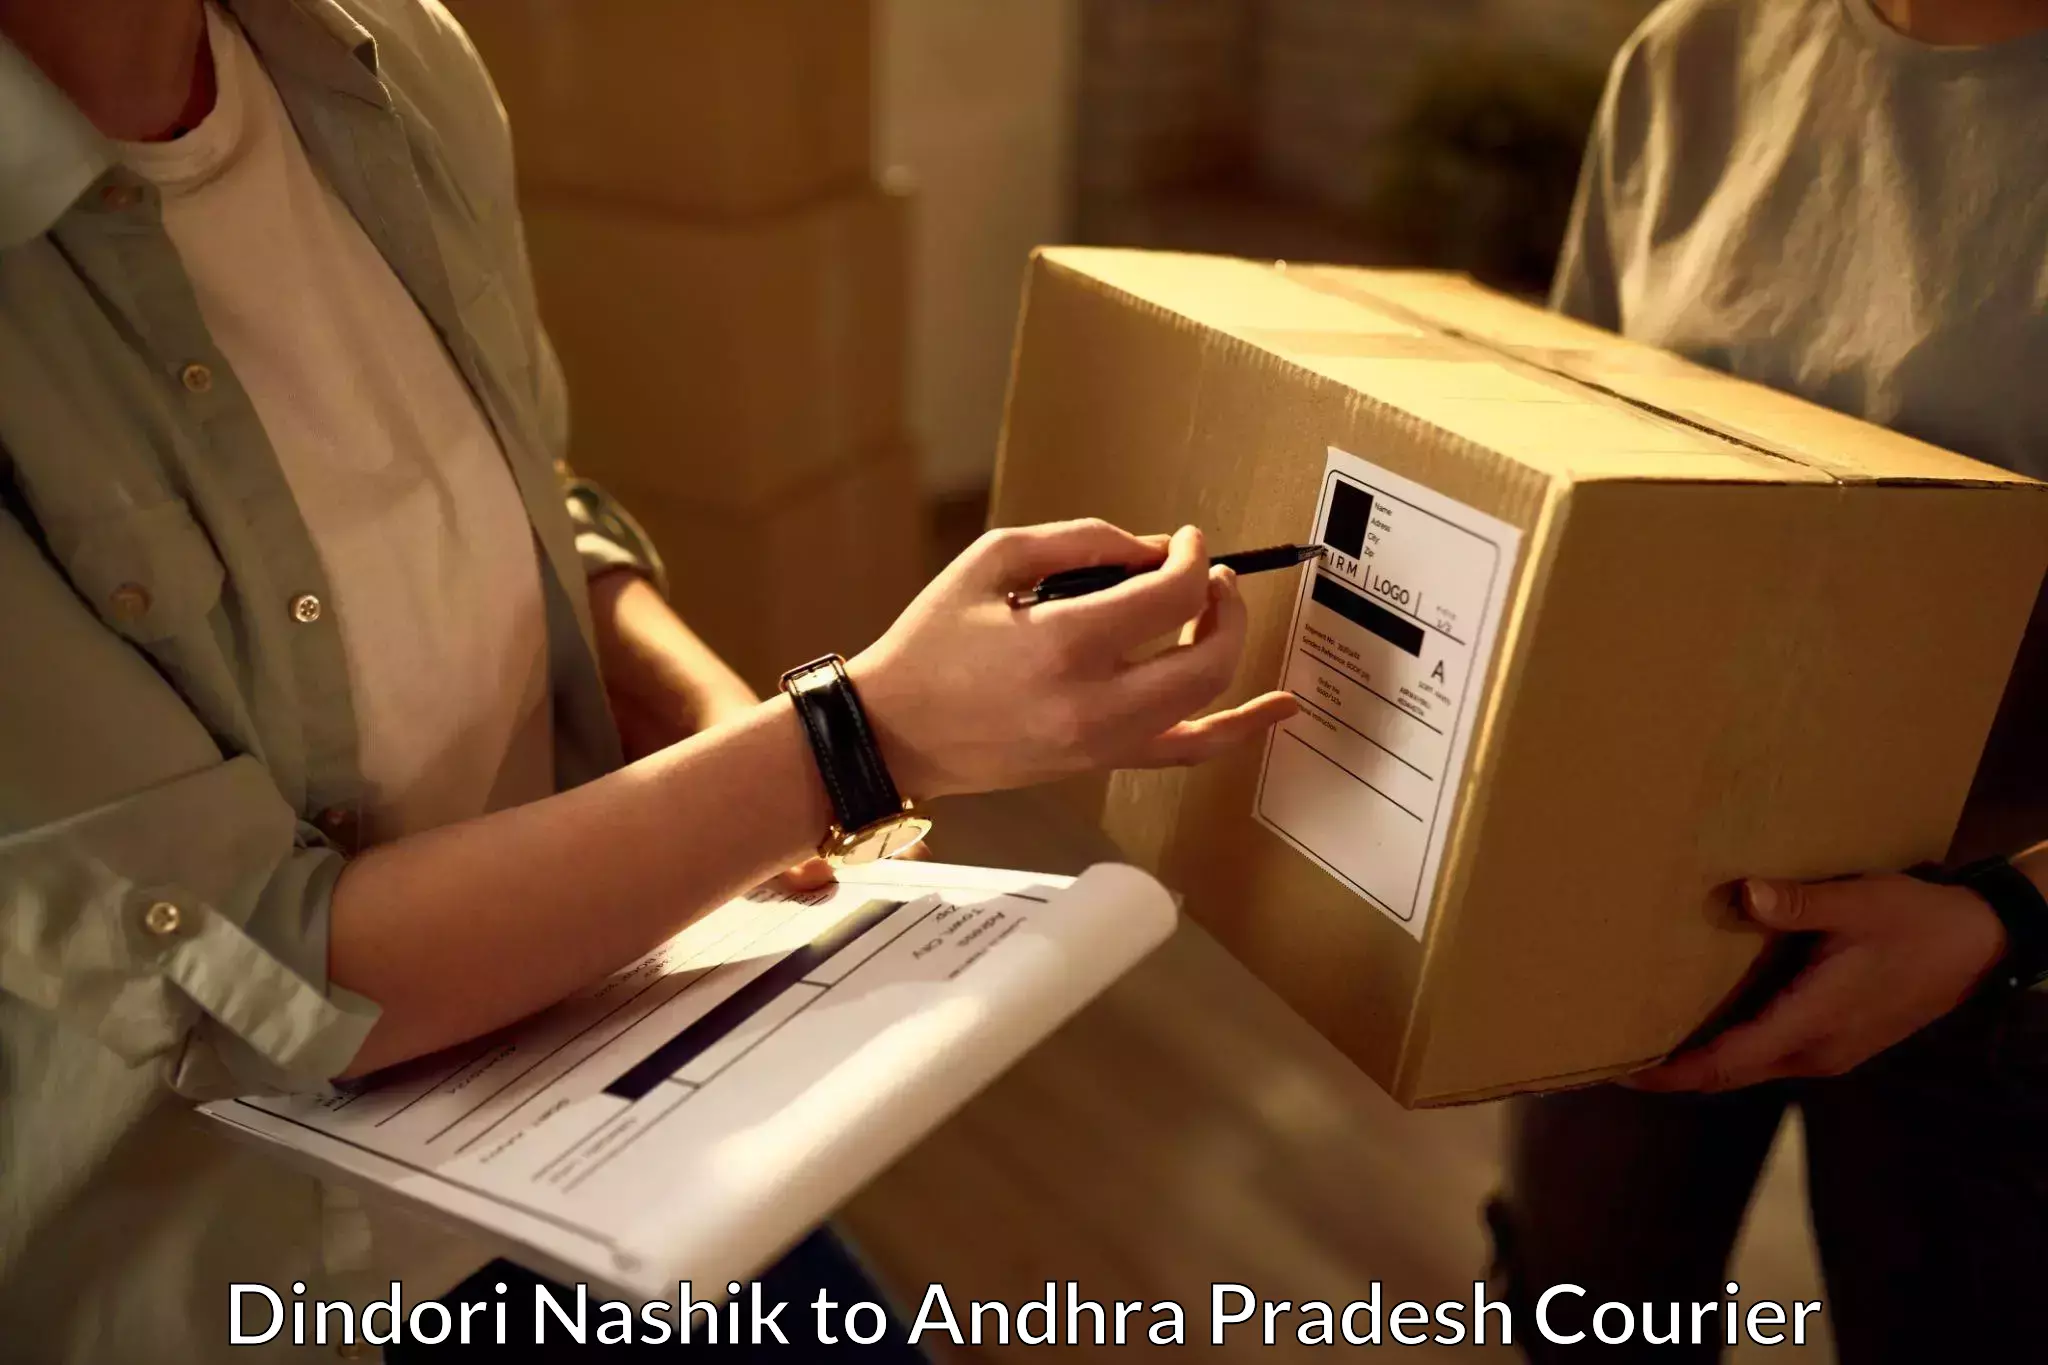 Expedited parcel delivery Dindori Nashik to Martur